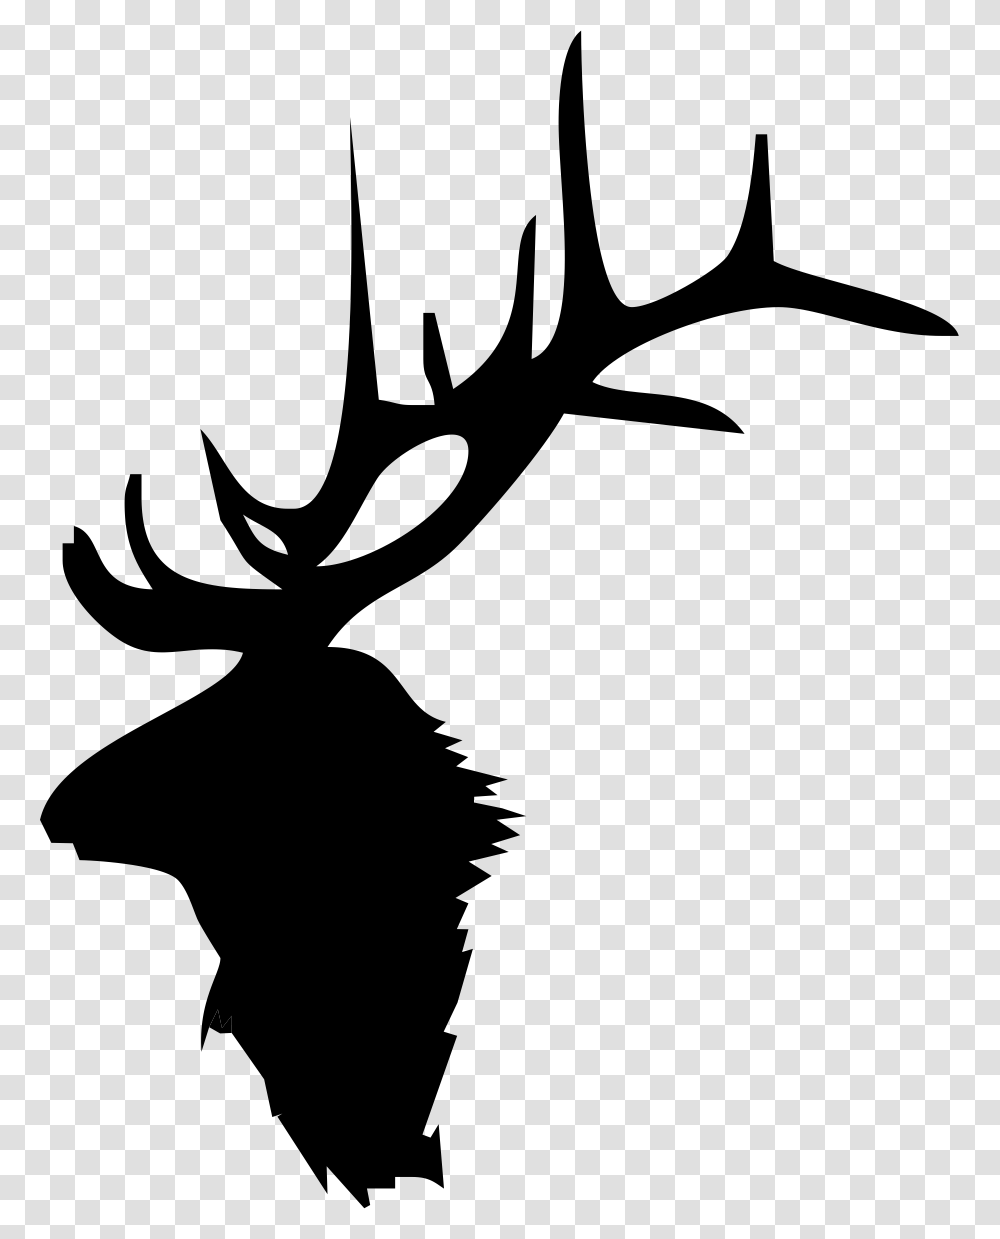 Elk Head Silhouette Elk Antlers Clip Art, Cross, Stencil Transparent Png